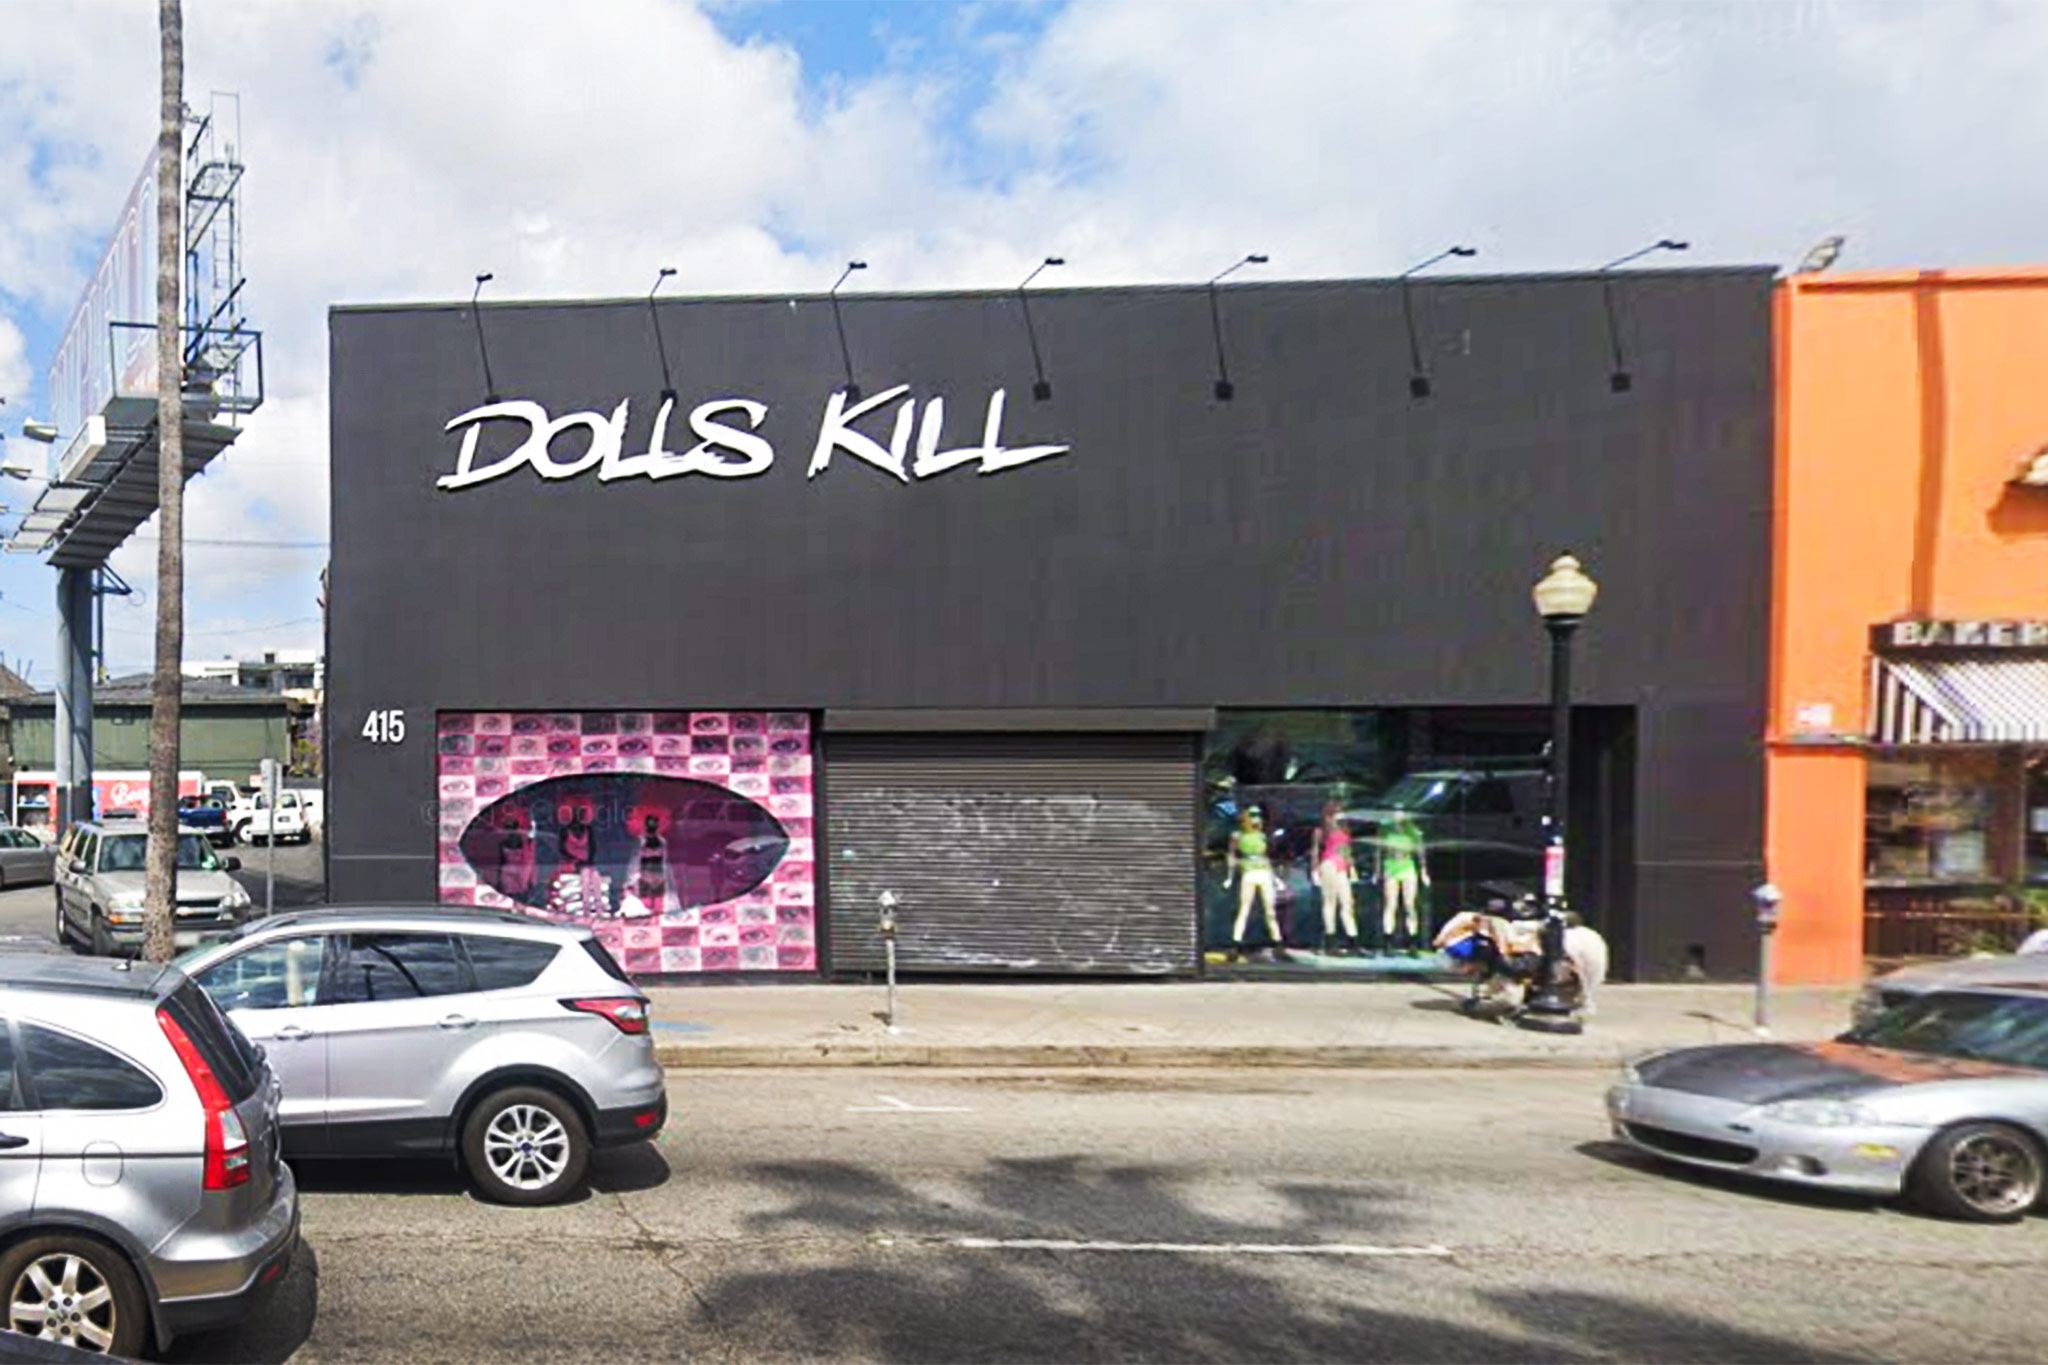 Dolls Kill